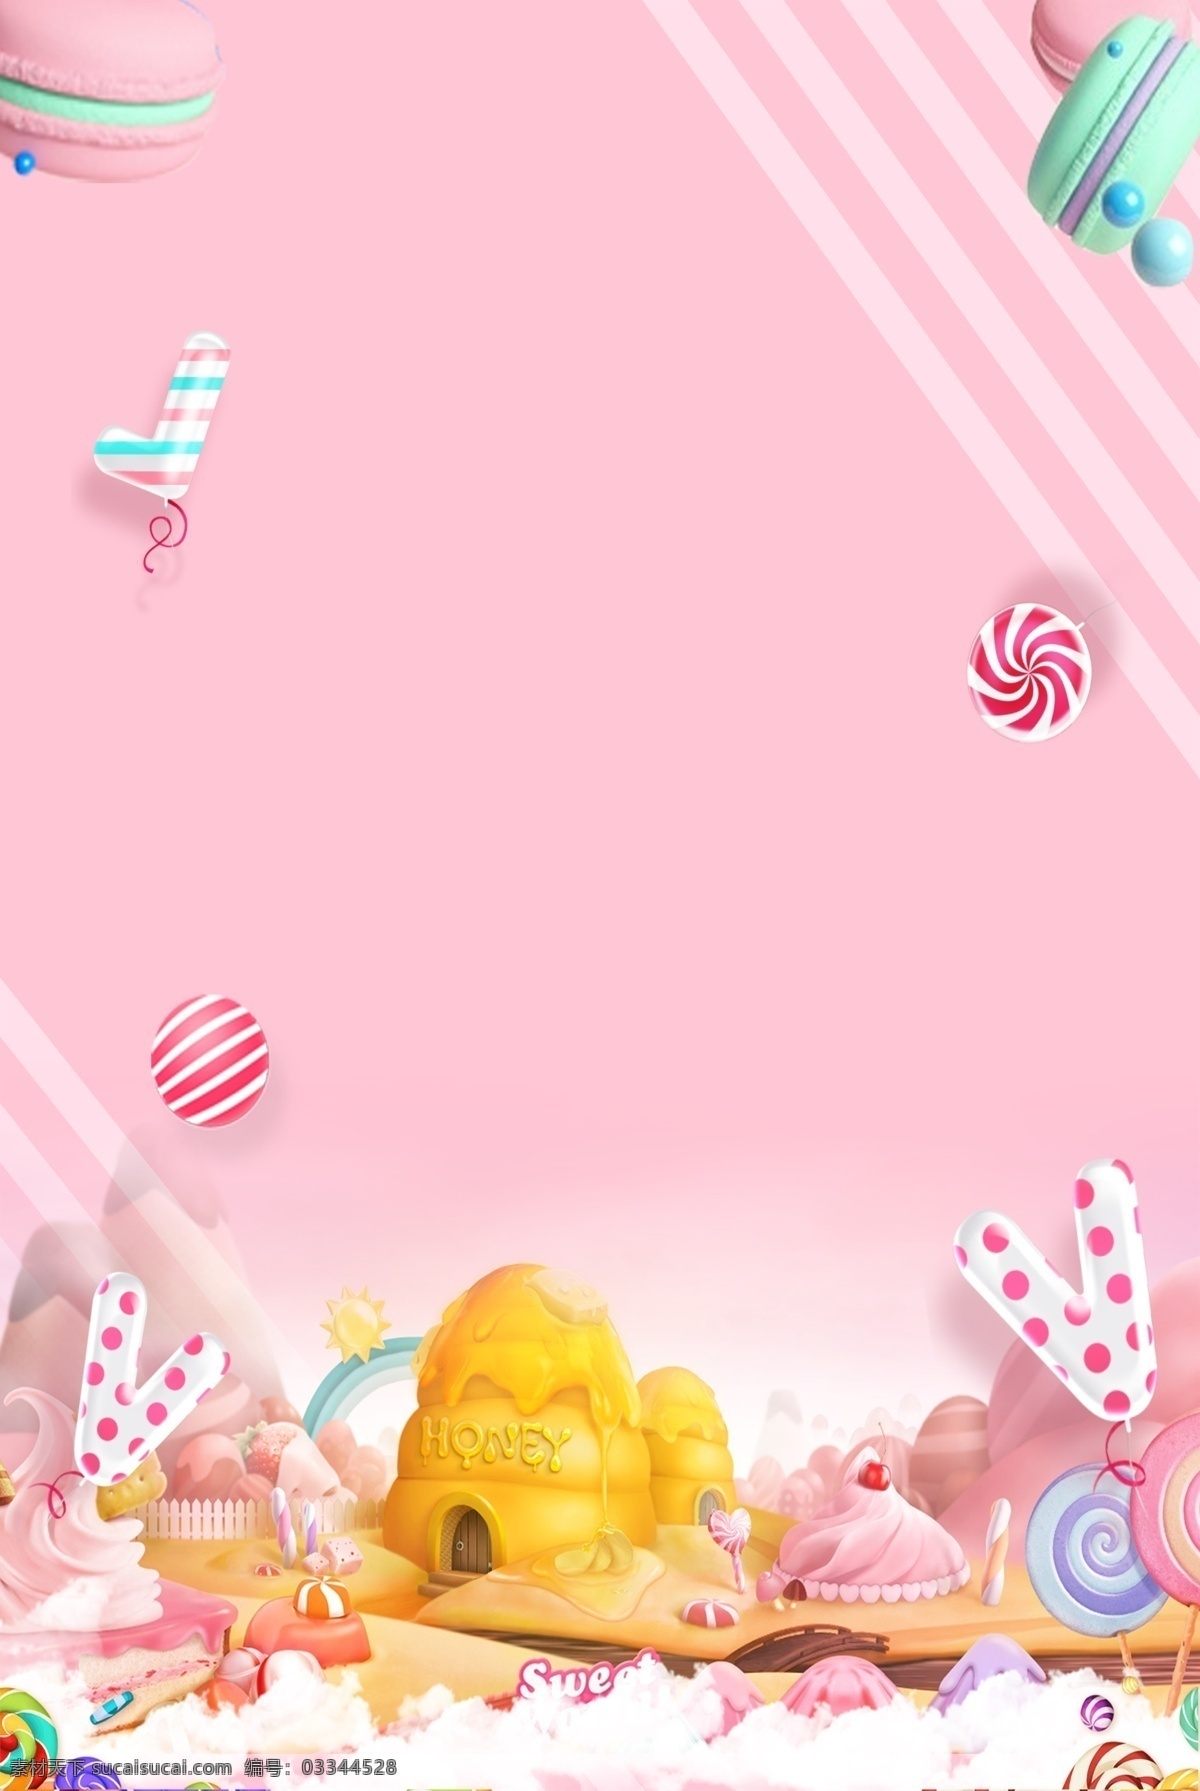 浪漫 粉色 糖果 海报 背景 广告背景 棉花糖 美食背景 小清新 糖果卡通背景 七色糖 马卡龙糖果 棉花糖背景